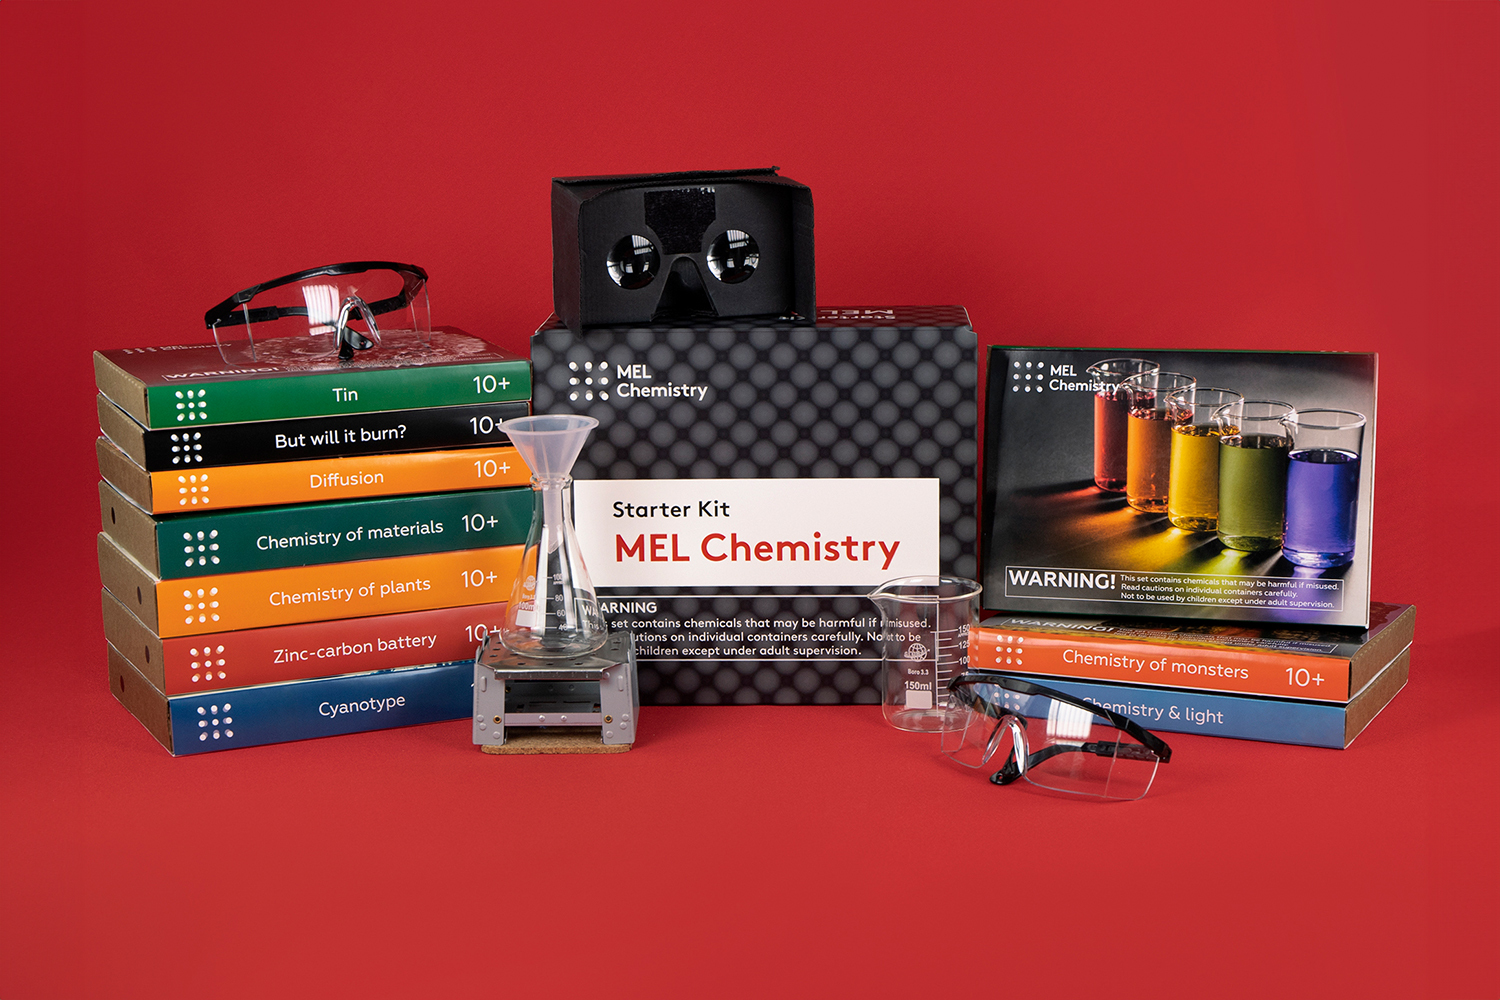 MEL Science kits